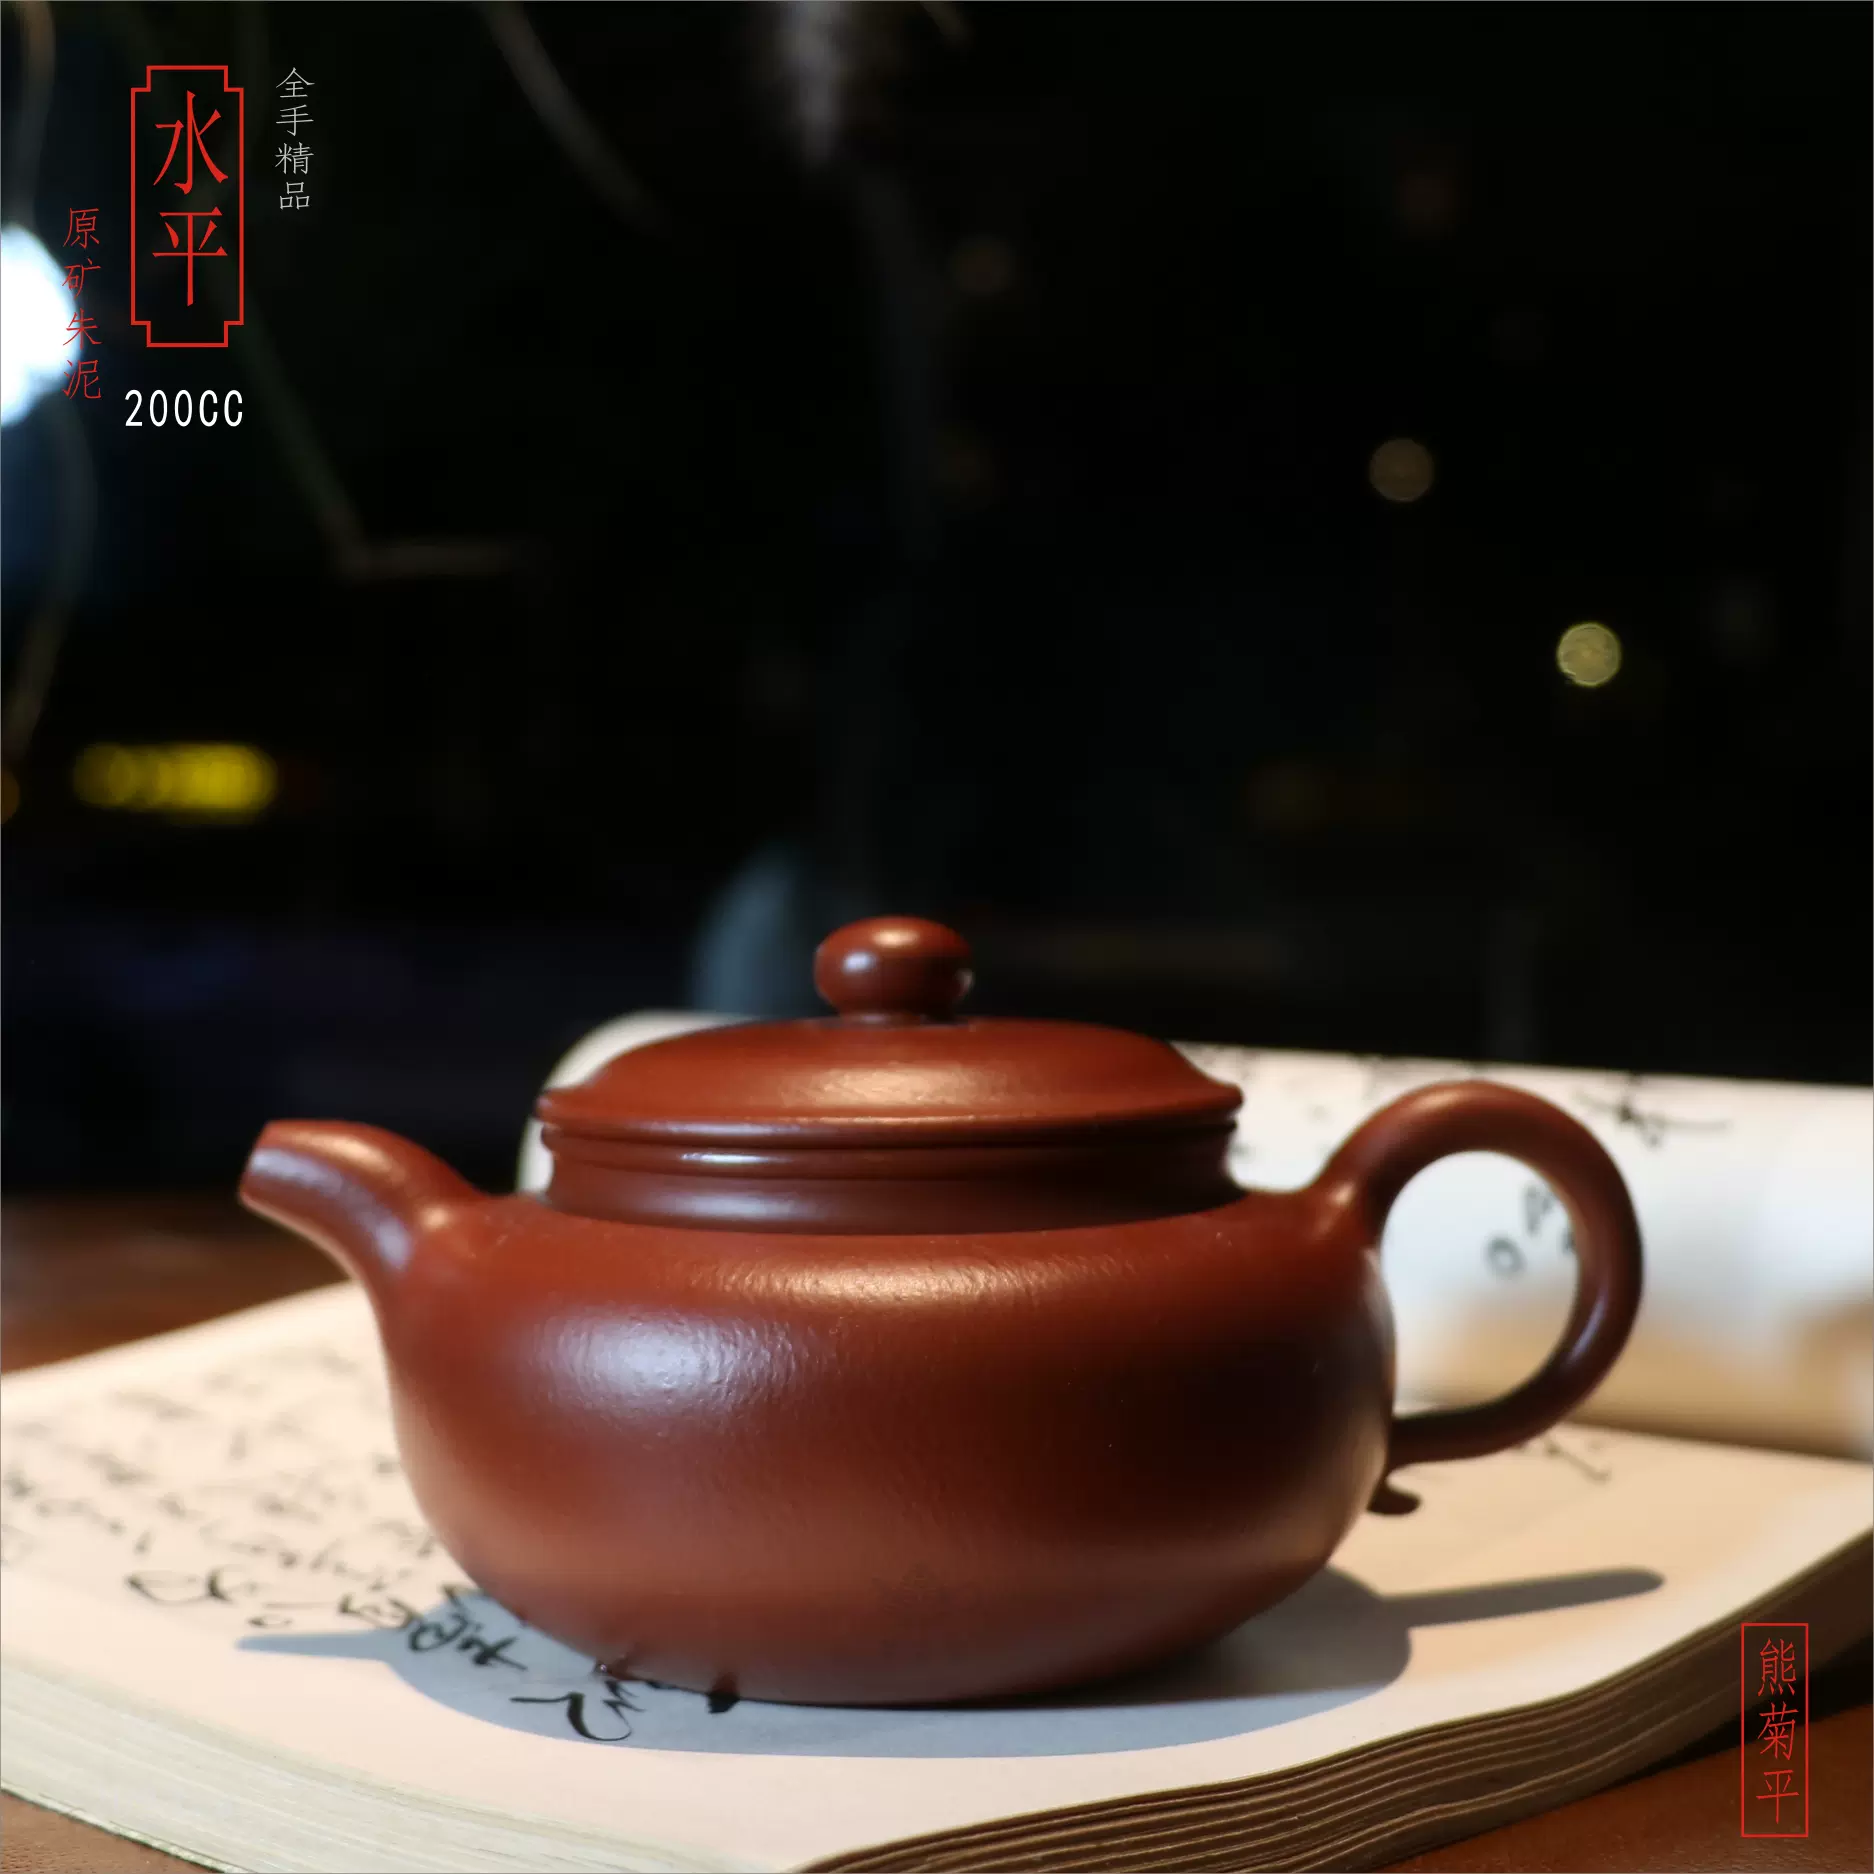 华颖堂陶瓷茶具收藏中国宜兴熊菊平紫砂正品全手工精选朱泥仿古壶 